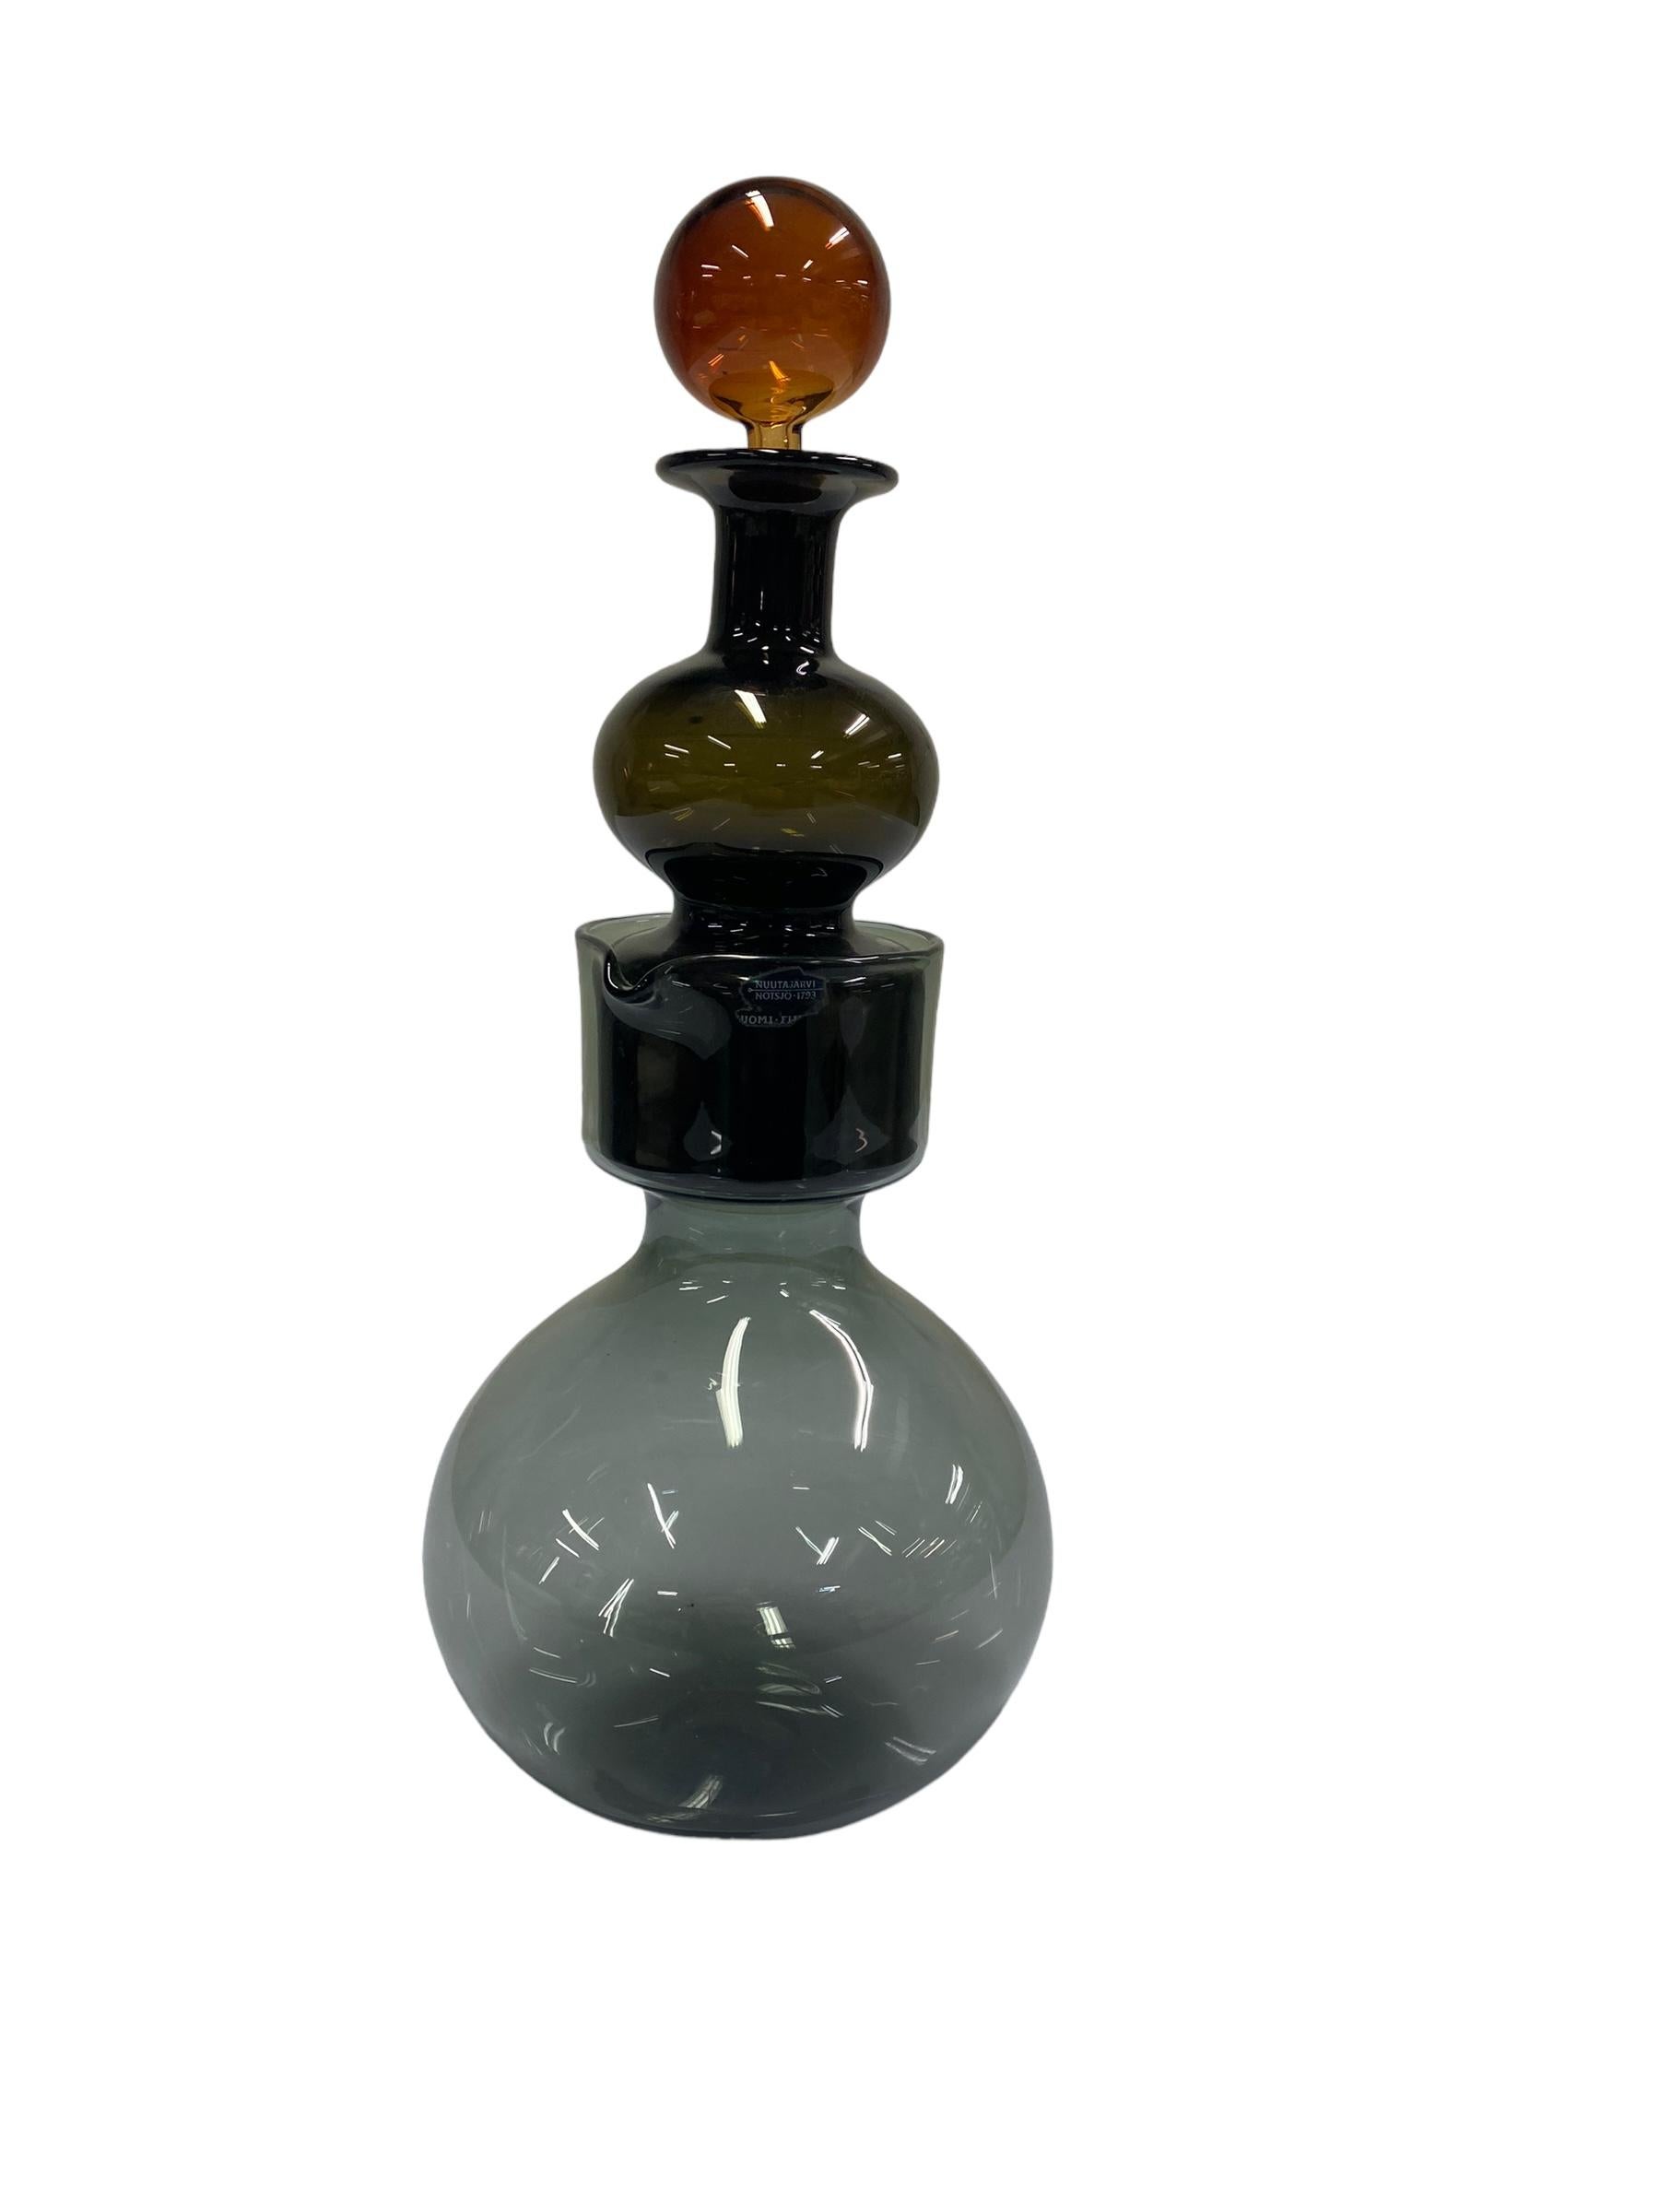 Blown Glass Kaj Franck `Kremlin Bells` Decanter for Nuutajärvi, Notsjö 1964 For Sale